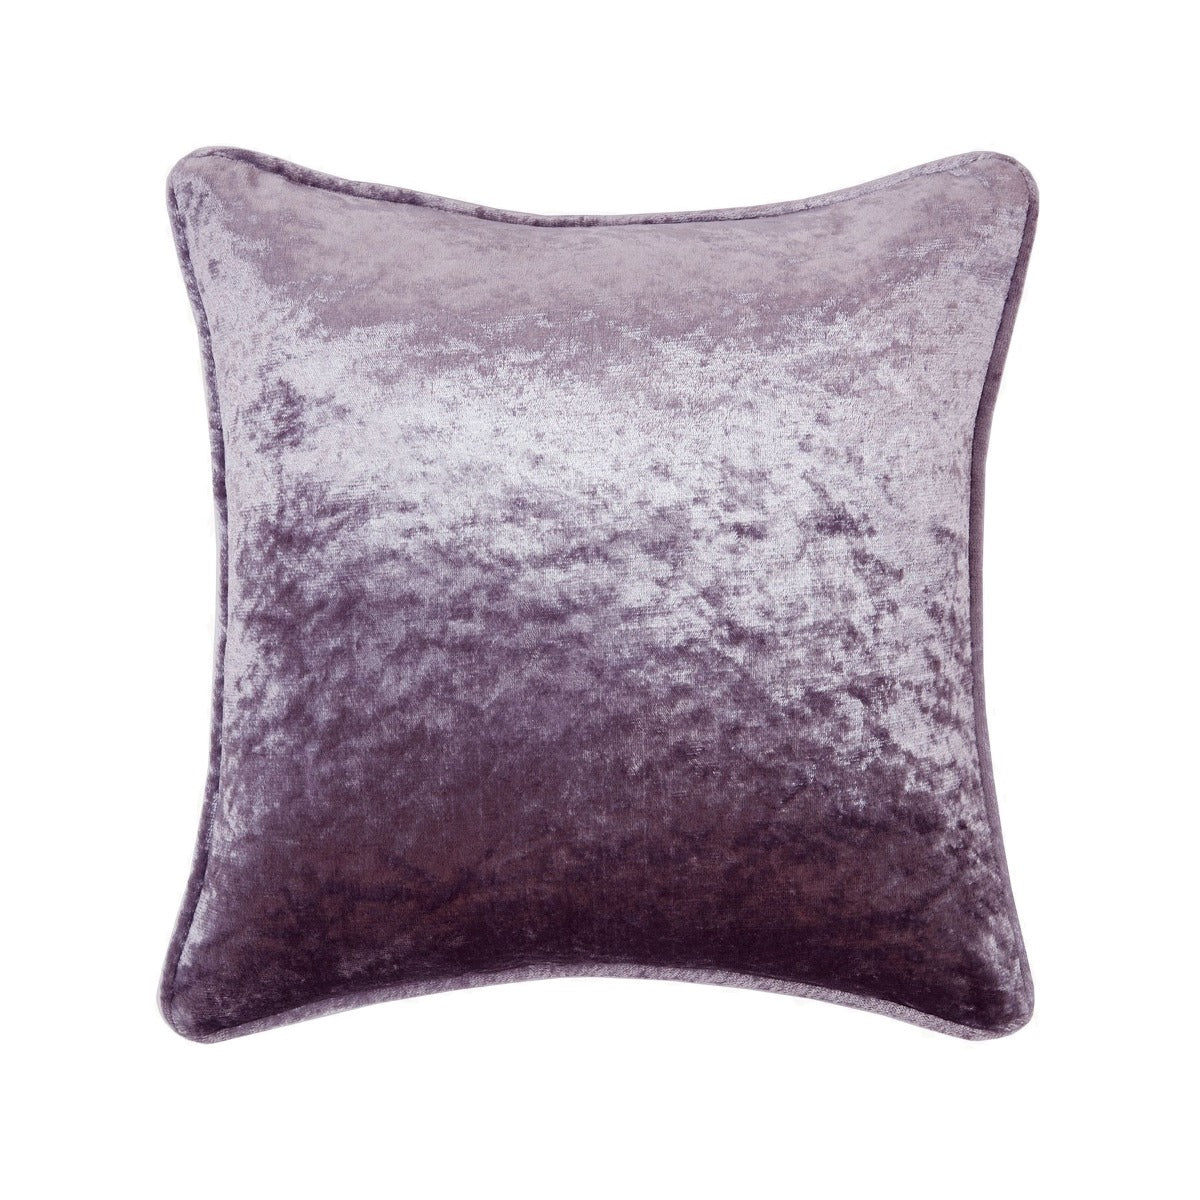 Allure Mauve Crushed Velvet Square Cushion (45cm x 45cm)